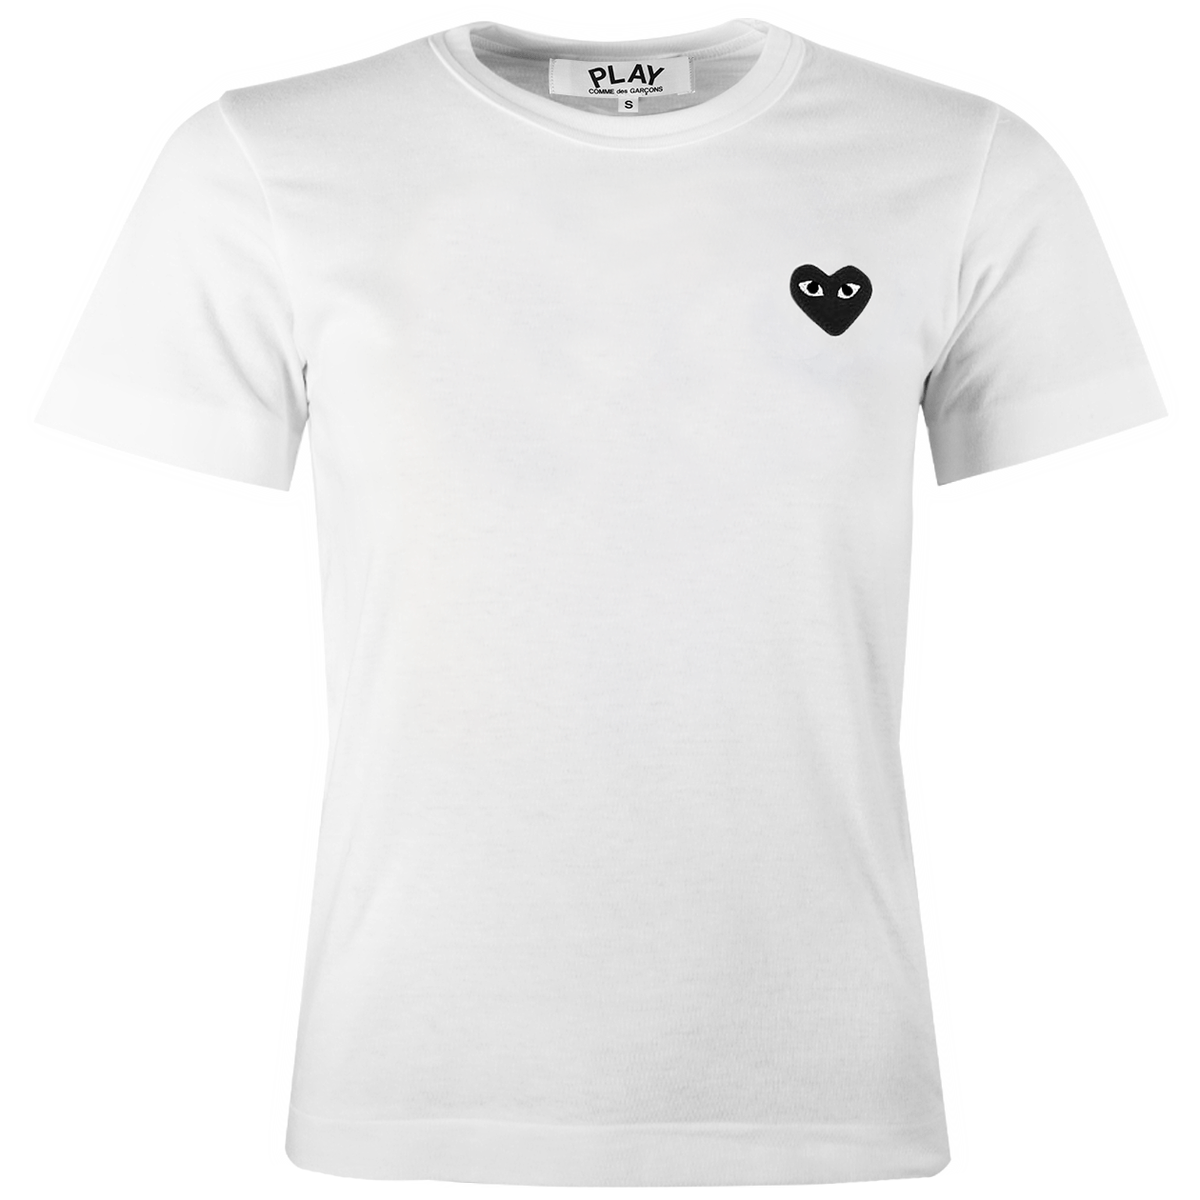 T063 Black Heart T-shirt White S White